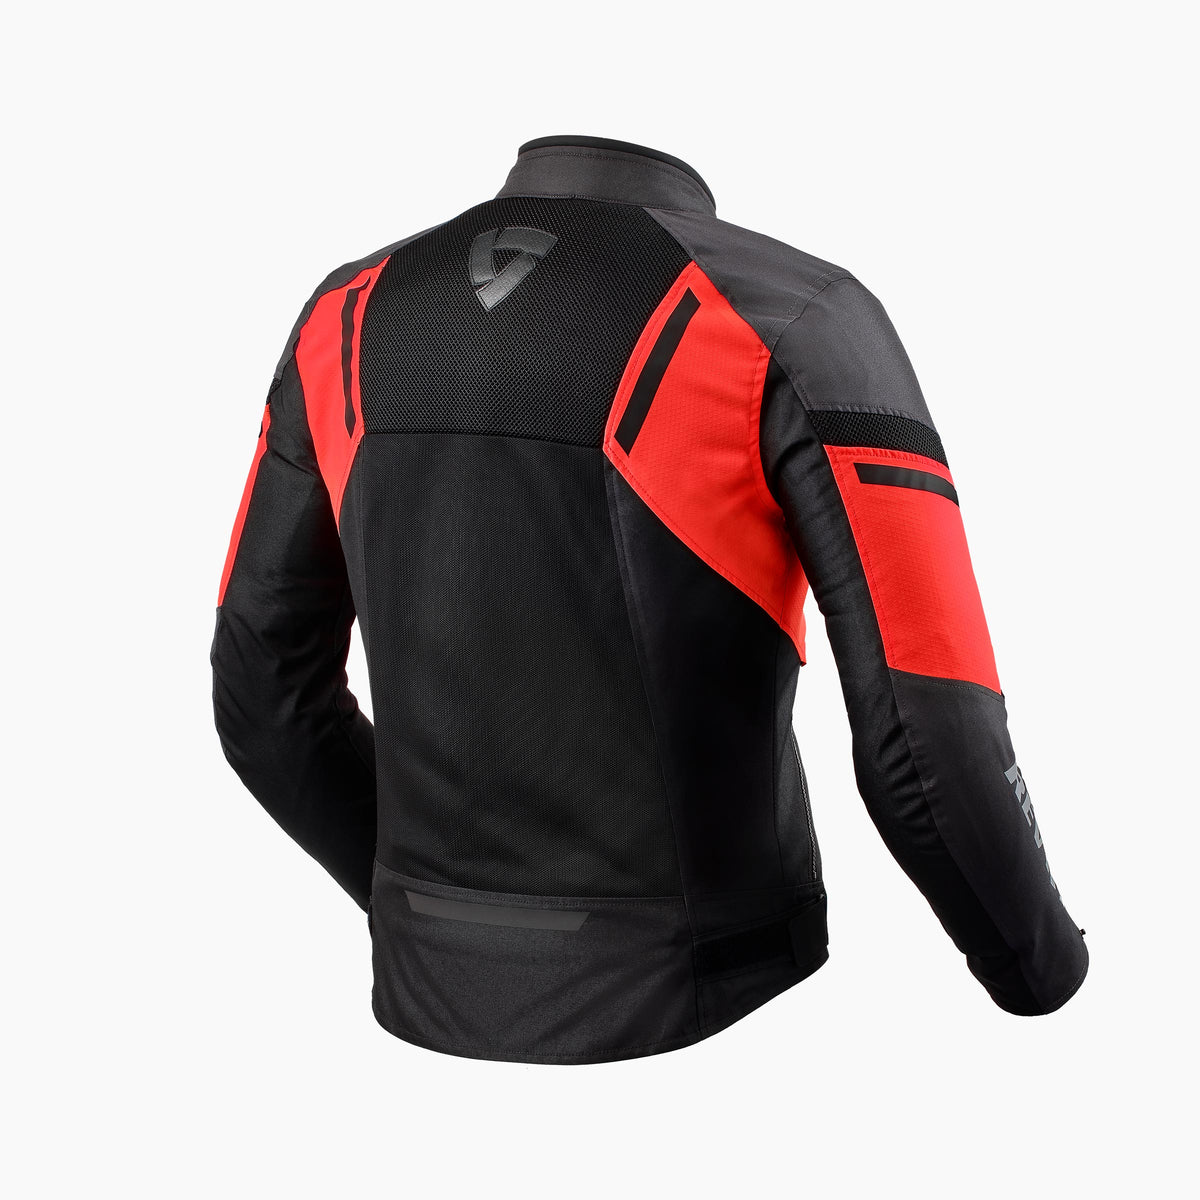 RevIt GT-R Air 3 Jacket Black/Neon Red